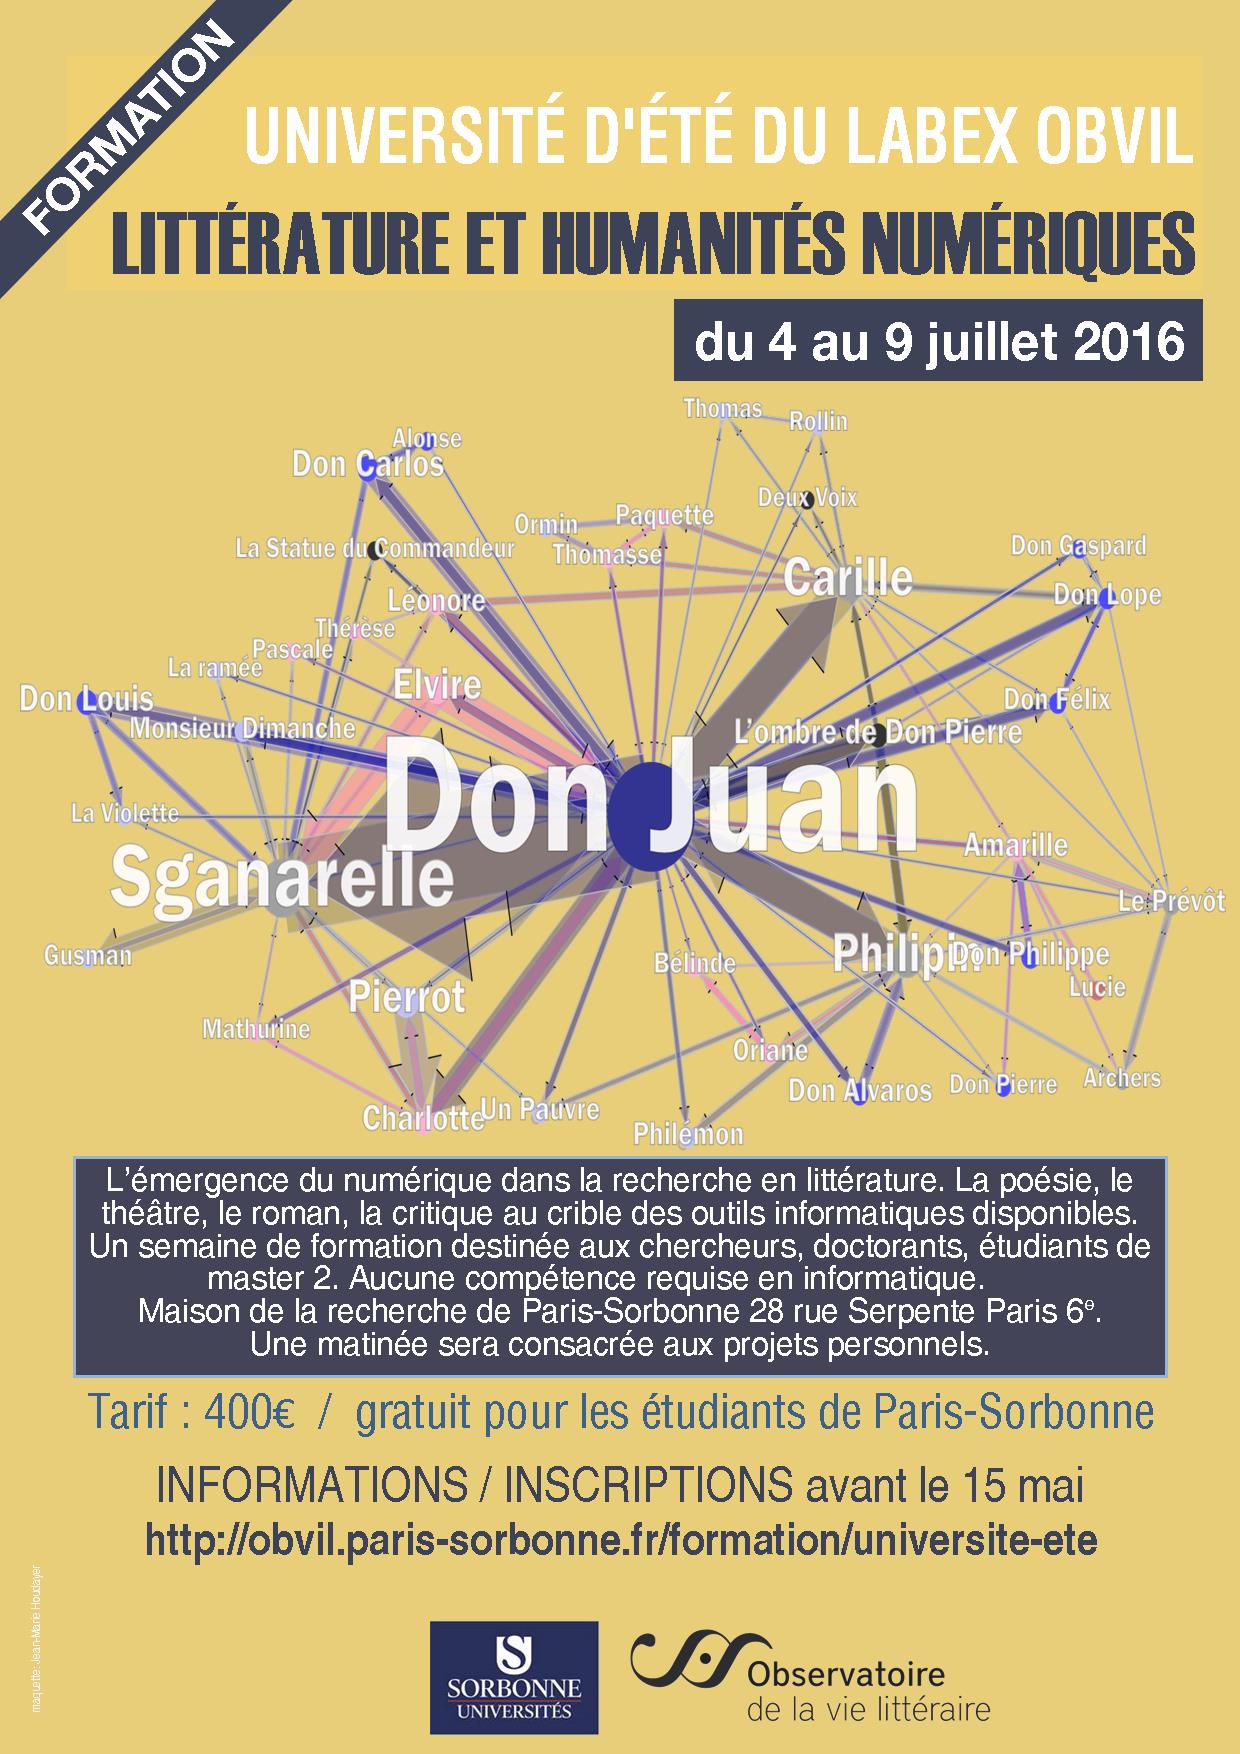 Université d'été en humanités numériques (Paris Sorbonne)